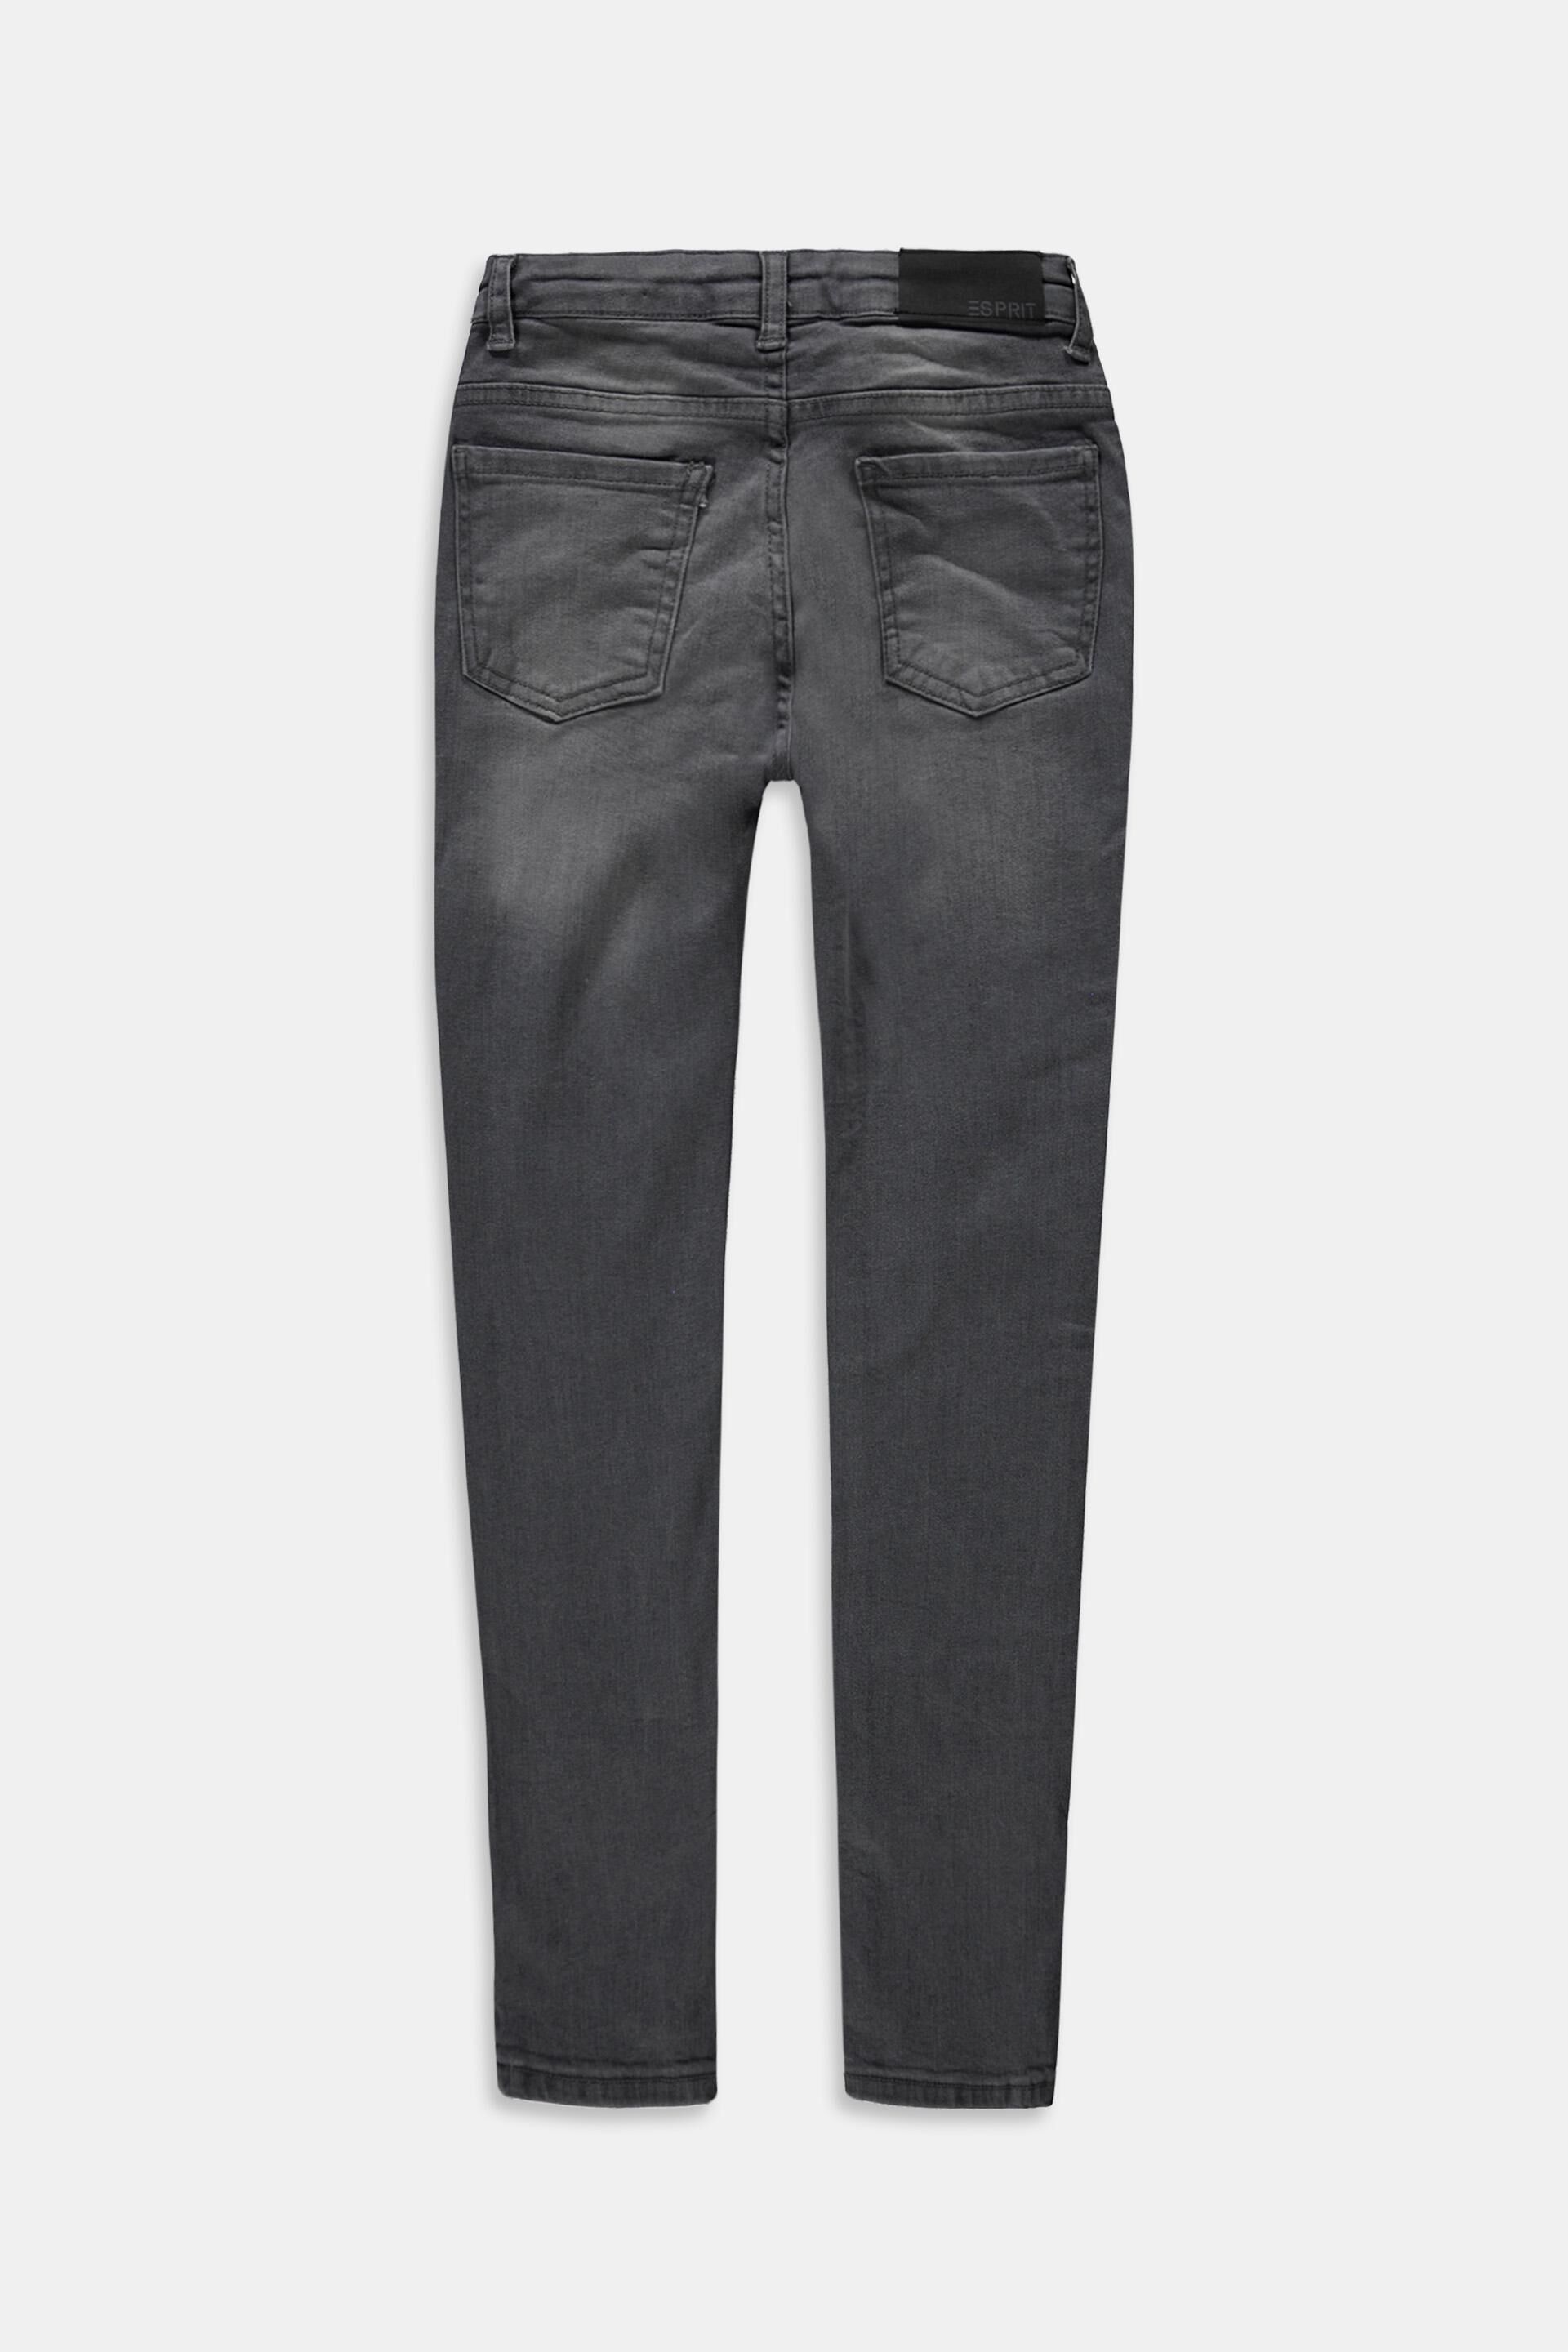 Esprit Outlet Jeans mit verstellbarem Bund